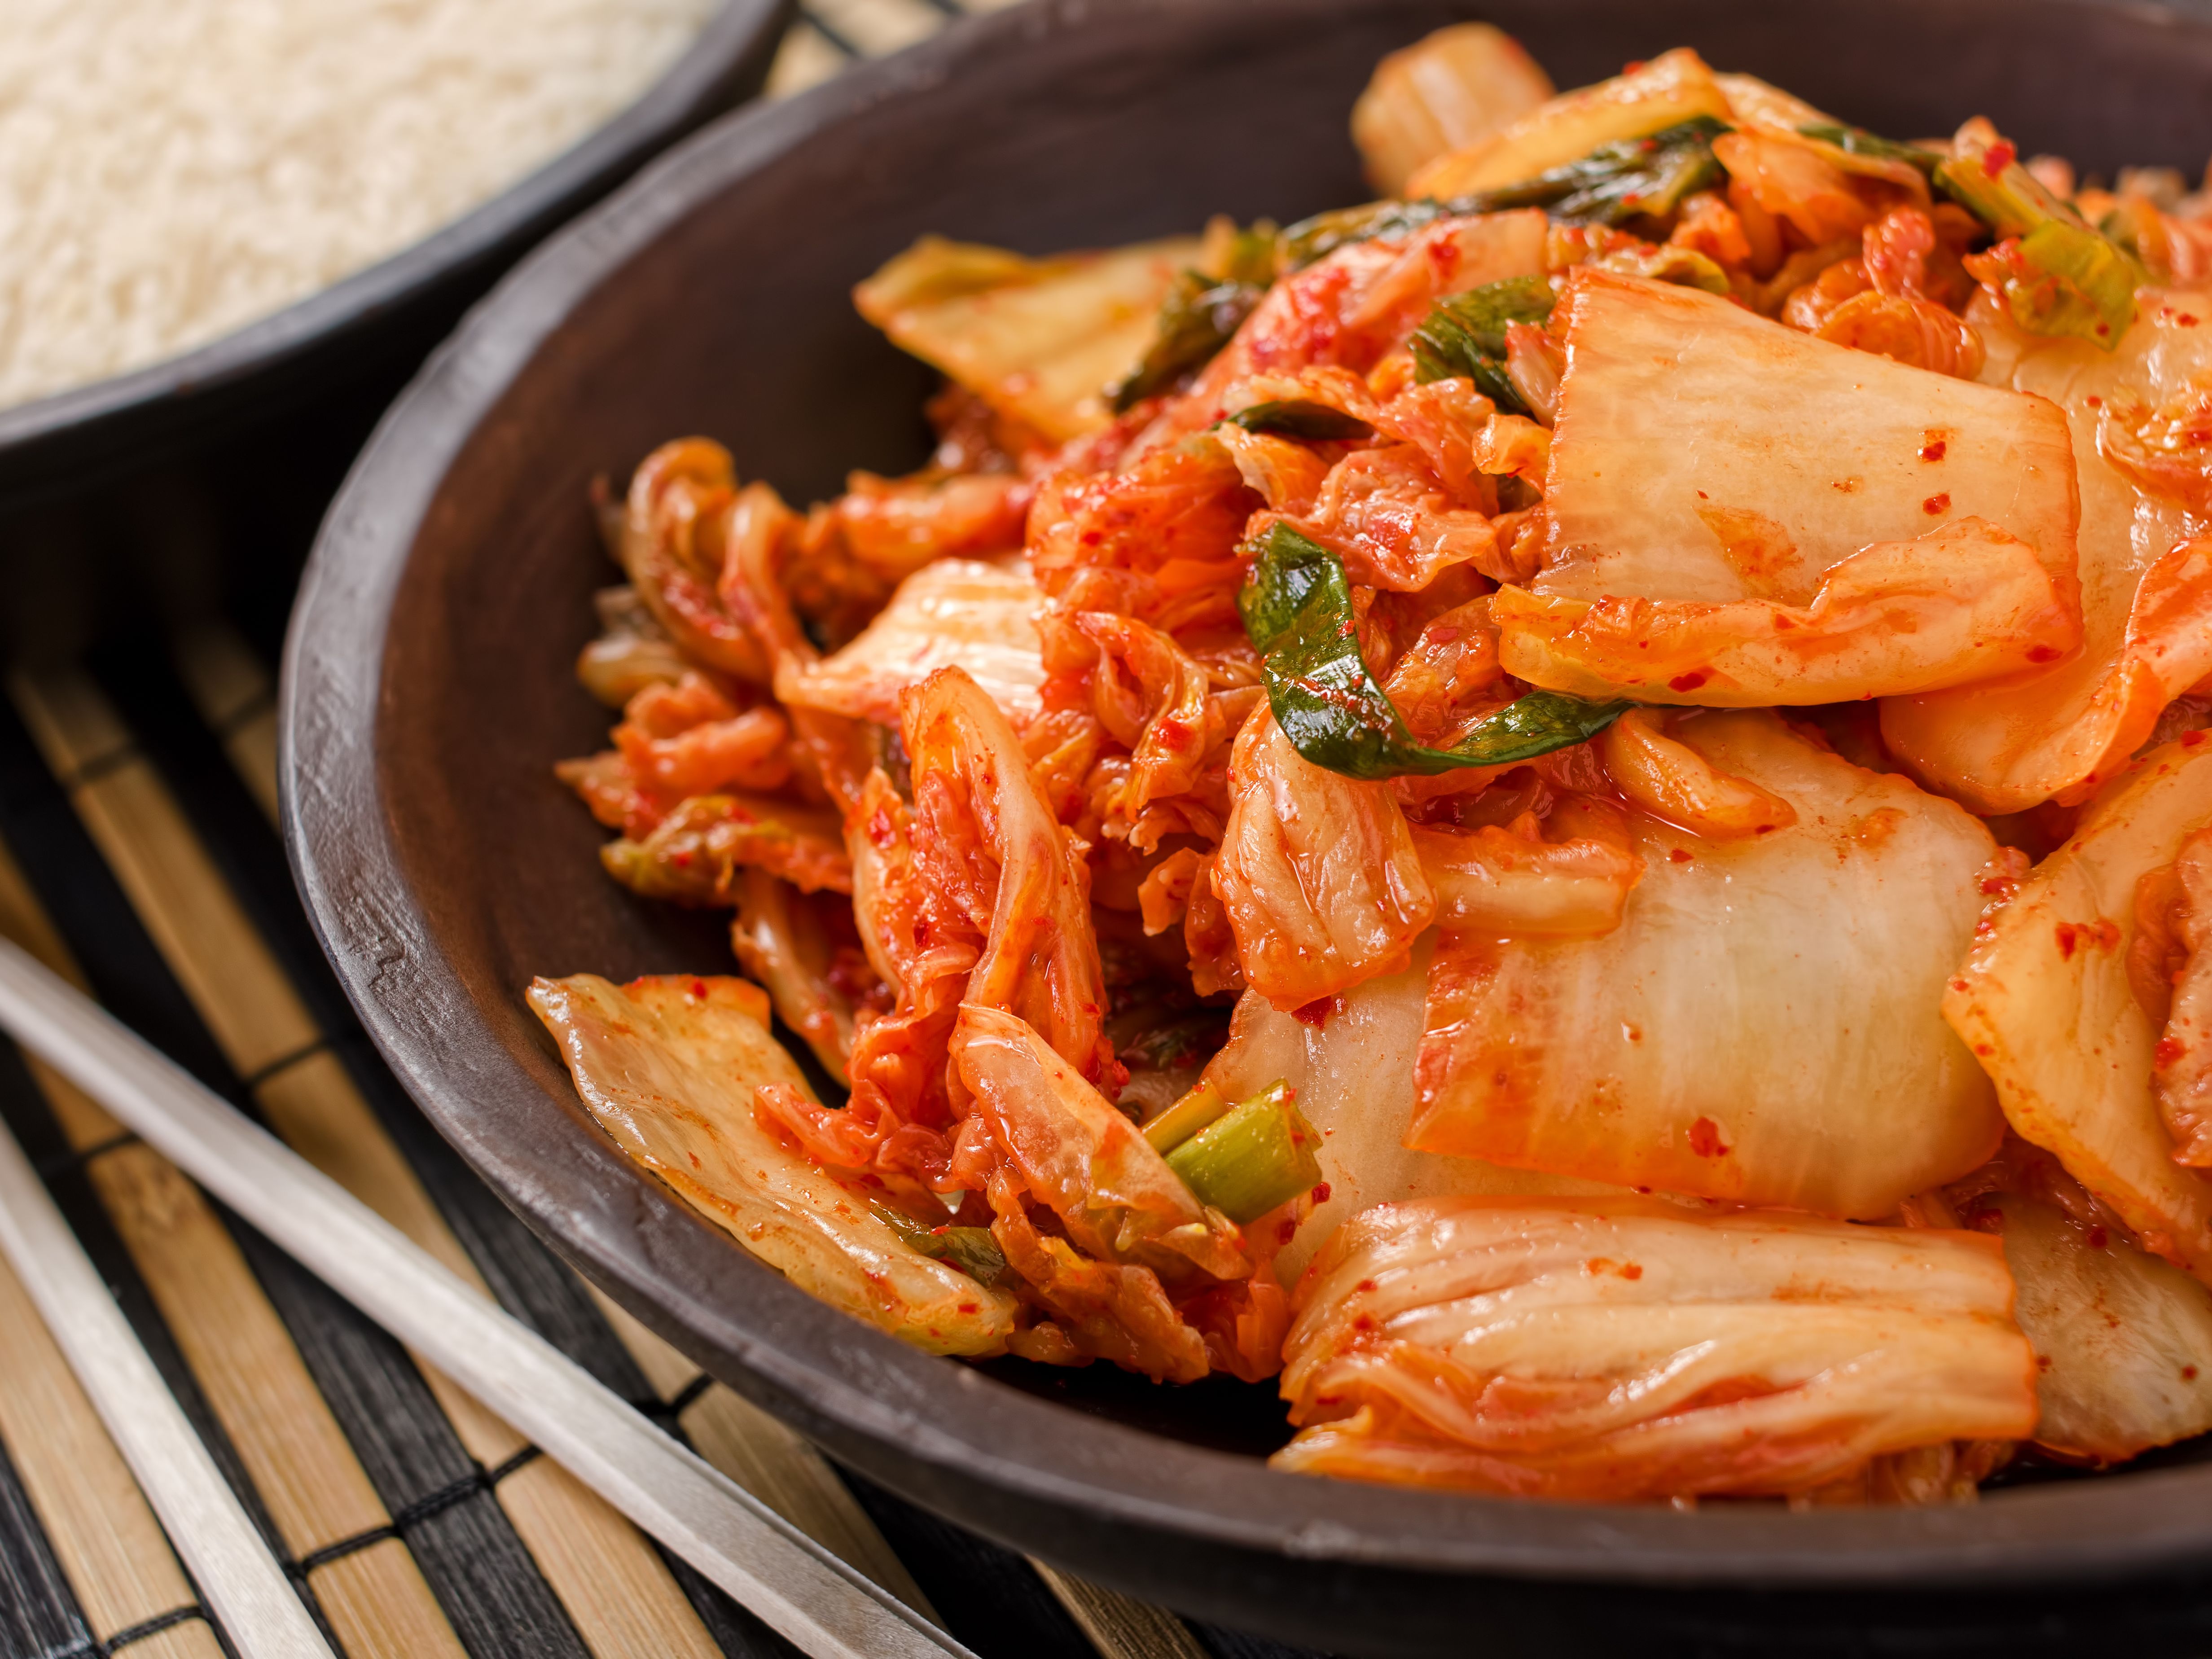 Le kimchi : le plat traditionnel des Coréens